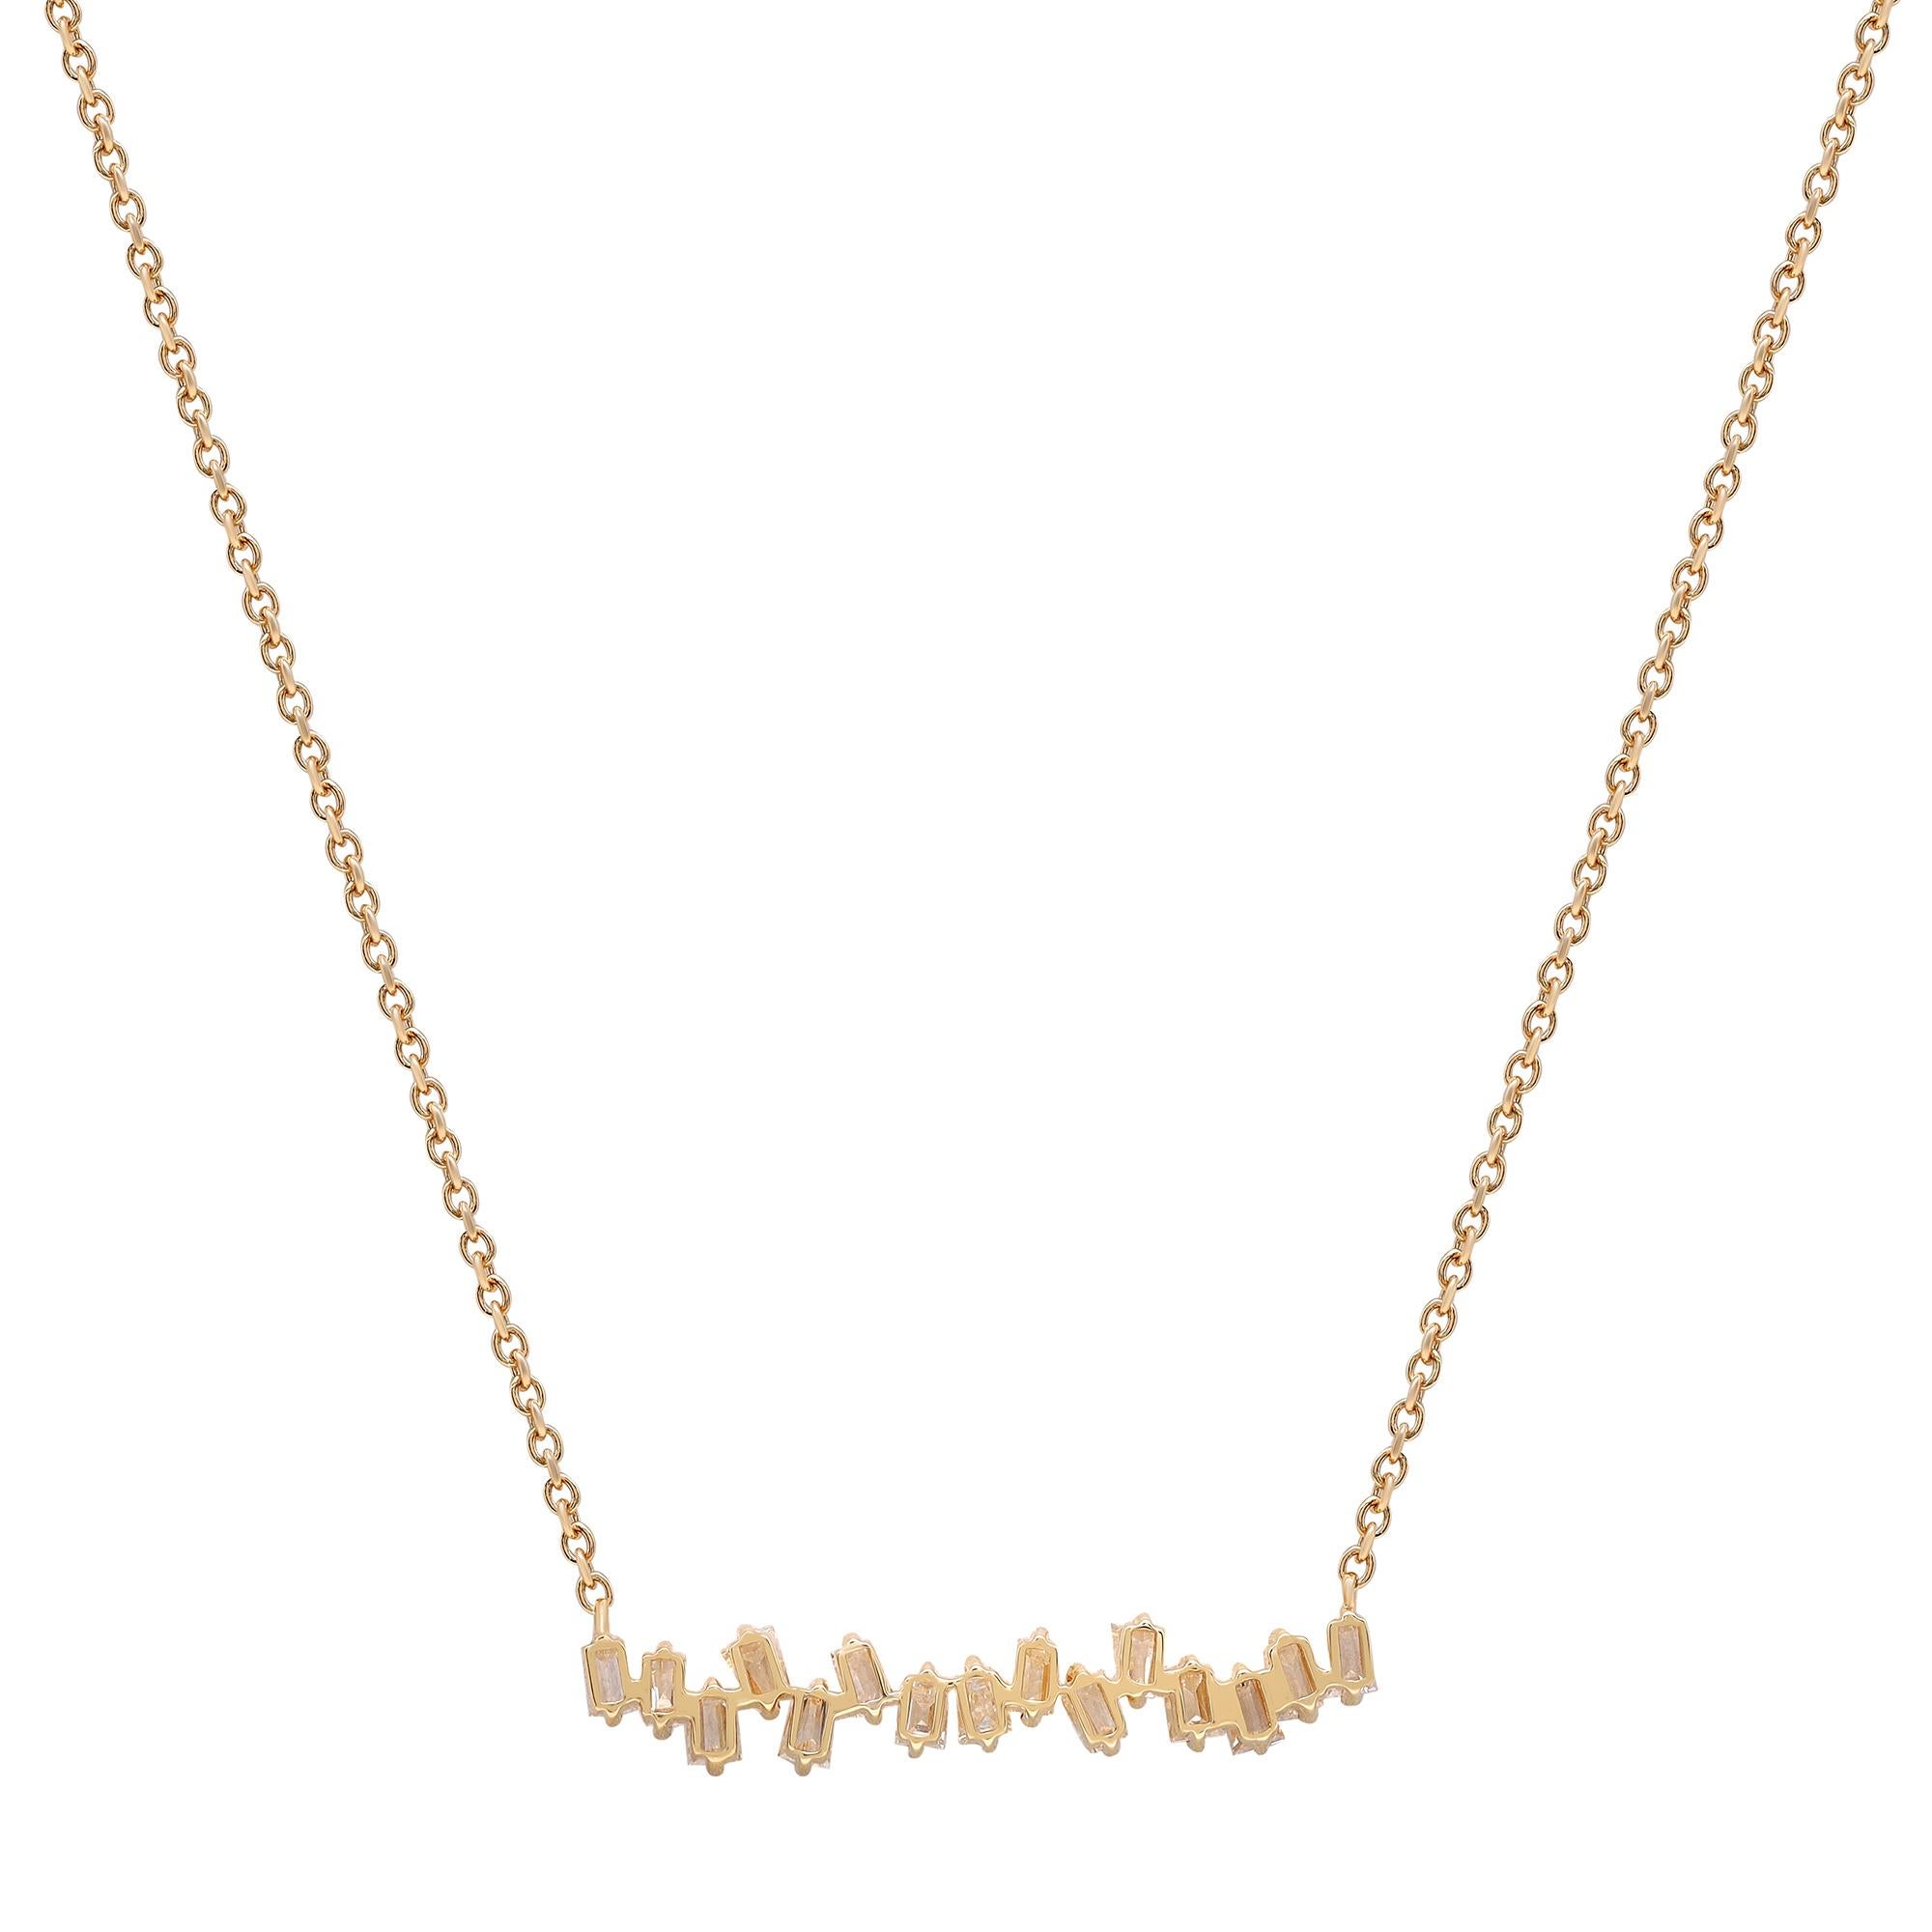 Modern Rachel Koen 1.02cttw Baguette Cut Diamond Cluster Bar Necklace 18K Yellow Gold For Sale